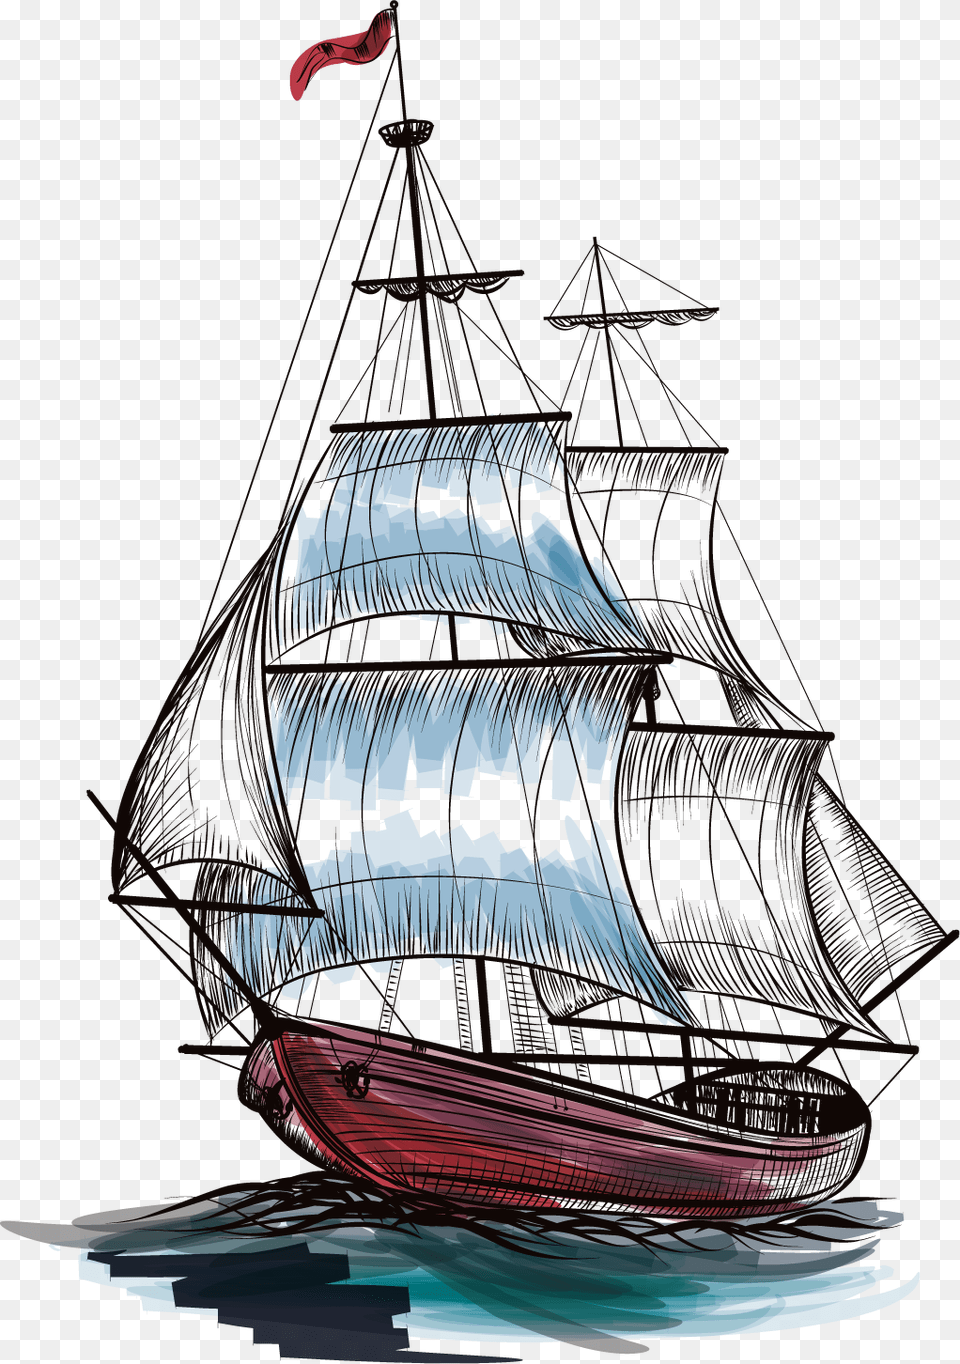 Sailing Ship Vector, Boat, Sailboat, Transportation, Vehicle Png Image